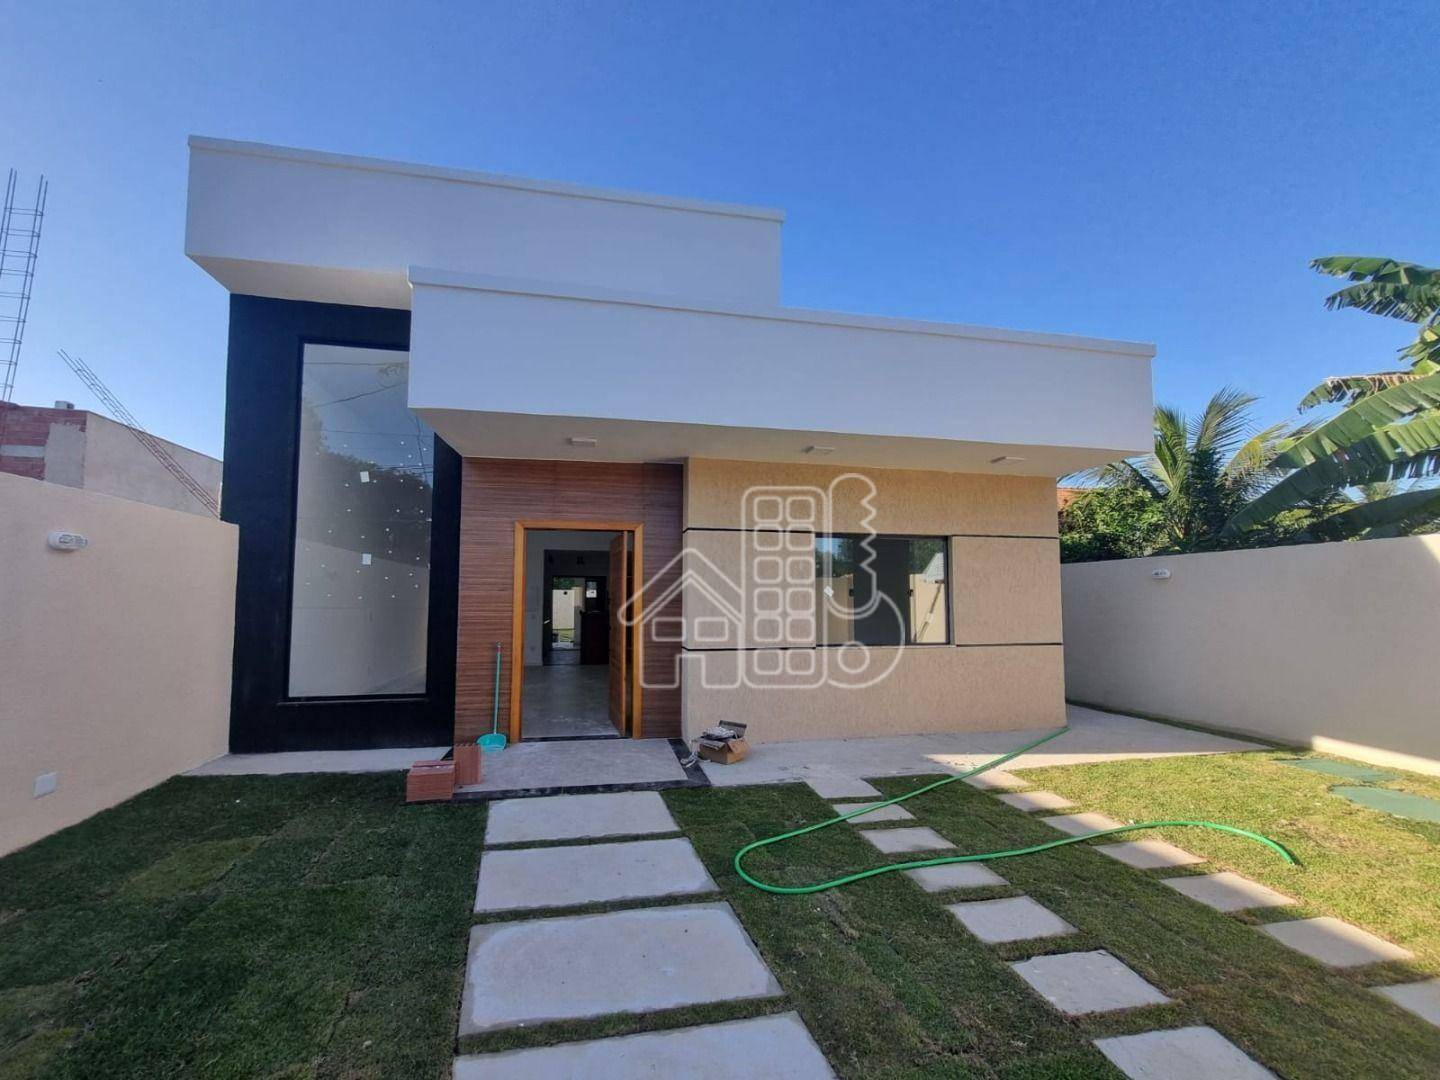 Casa com 3 dormitórios à venda, 116 m² por R$ 650.000,00 - Jardim Atlântico Oeste (Itaipuaçu) - Maricá/RJ